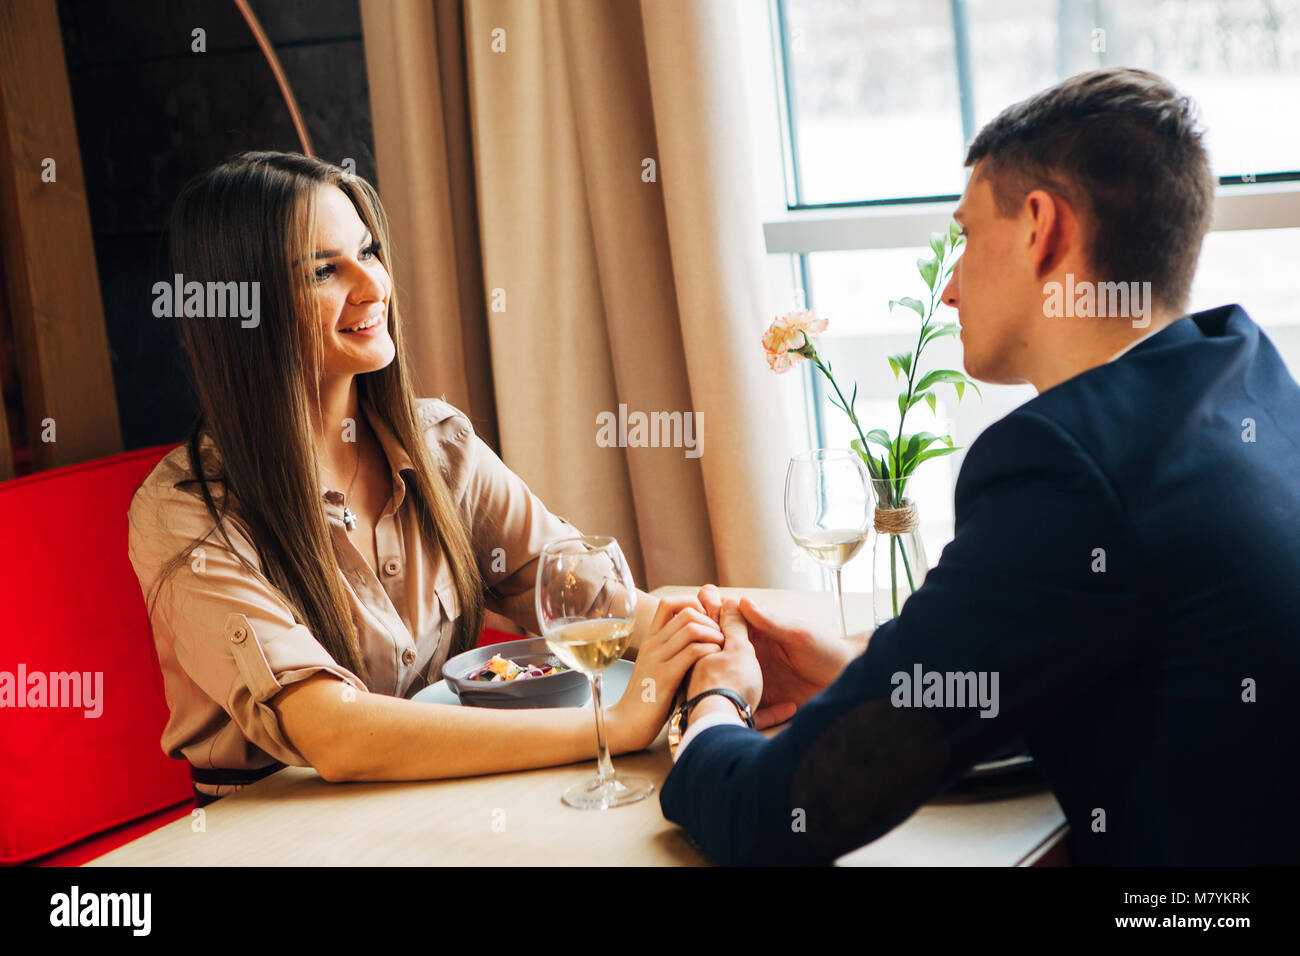 Jeune couple heureux date romantique verre verre de vin blanc au restaurant, célébrer la Saint-Valentin Banque D'Images